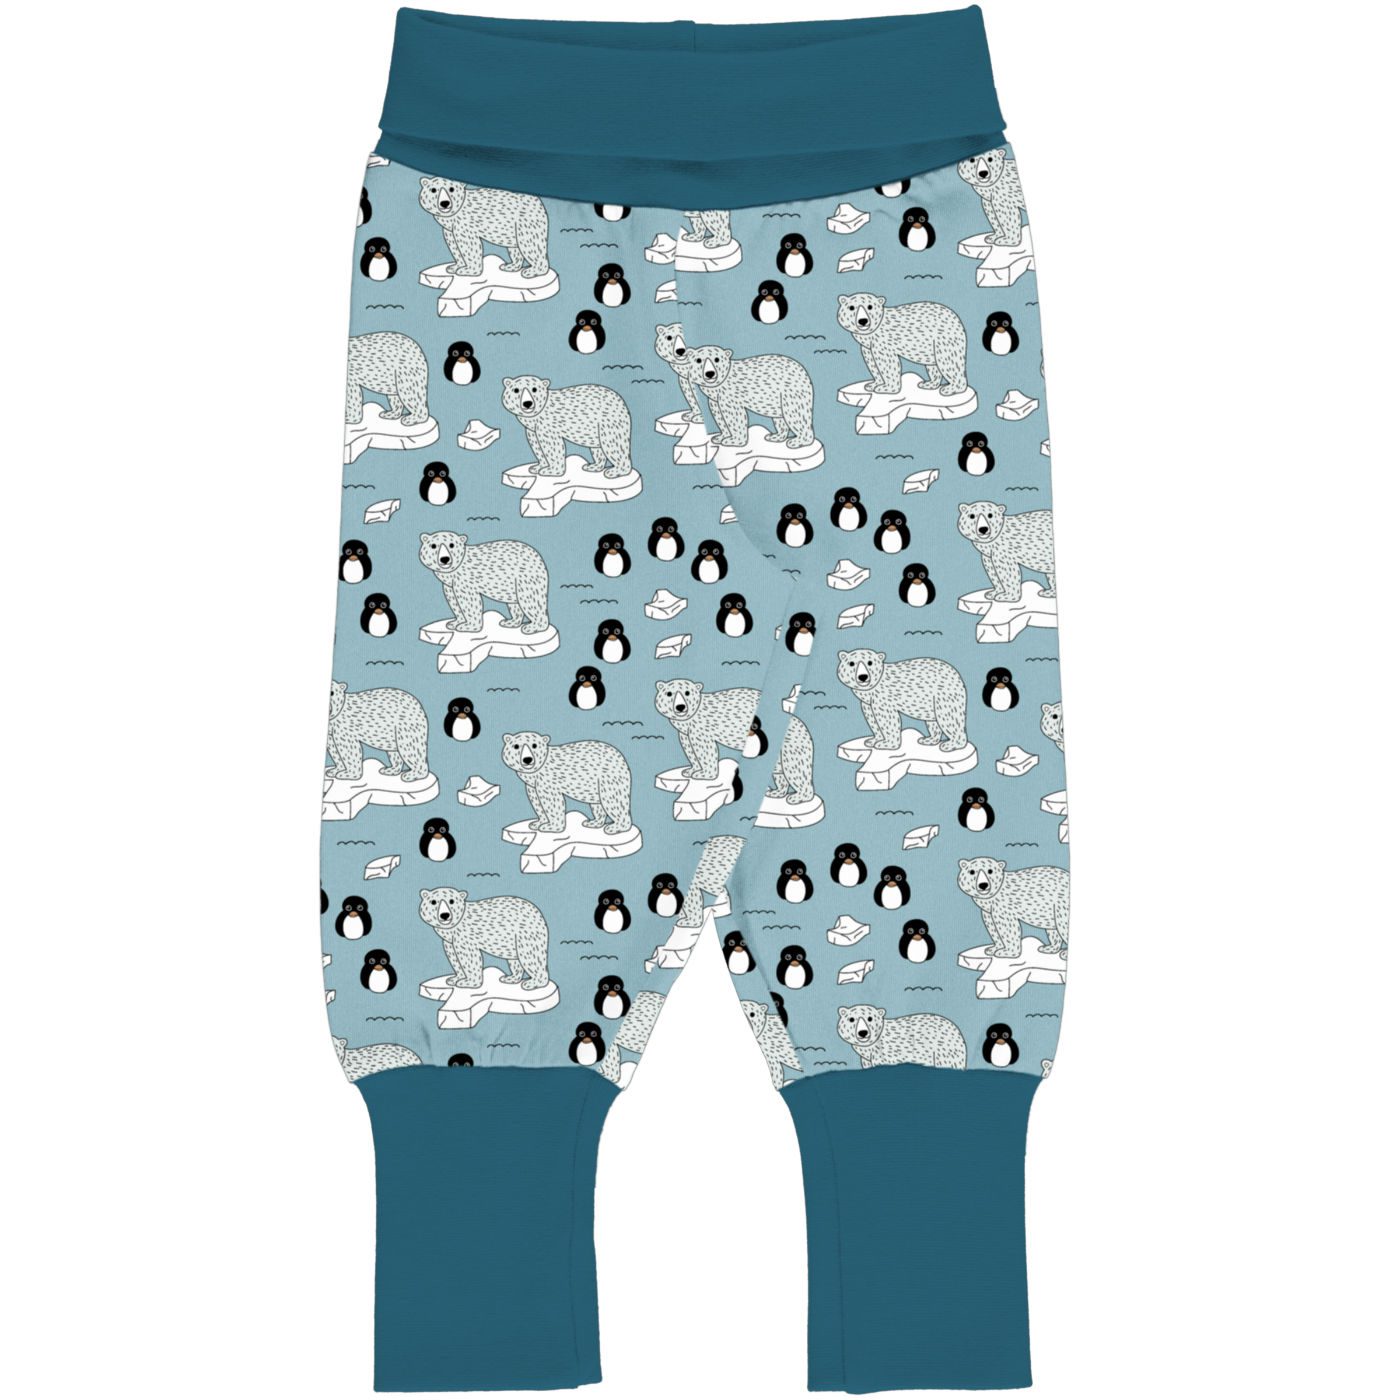 Penguin Ribs pants